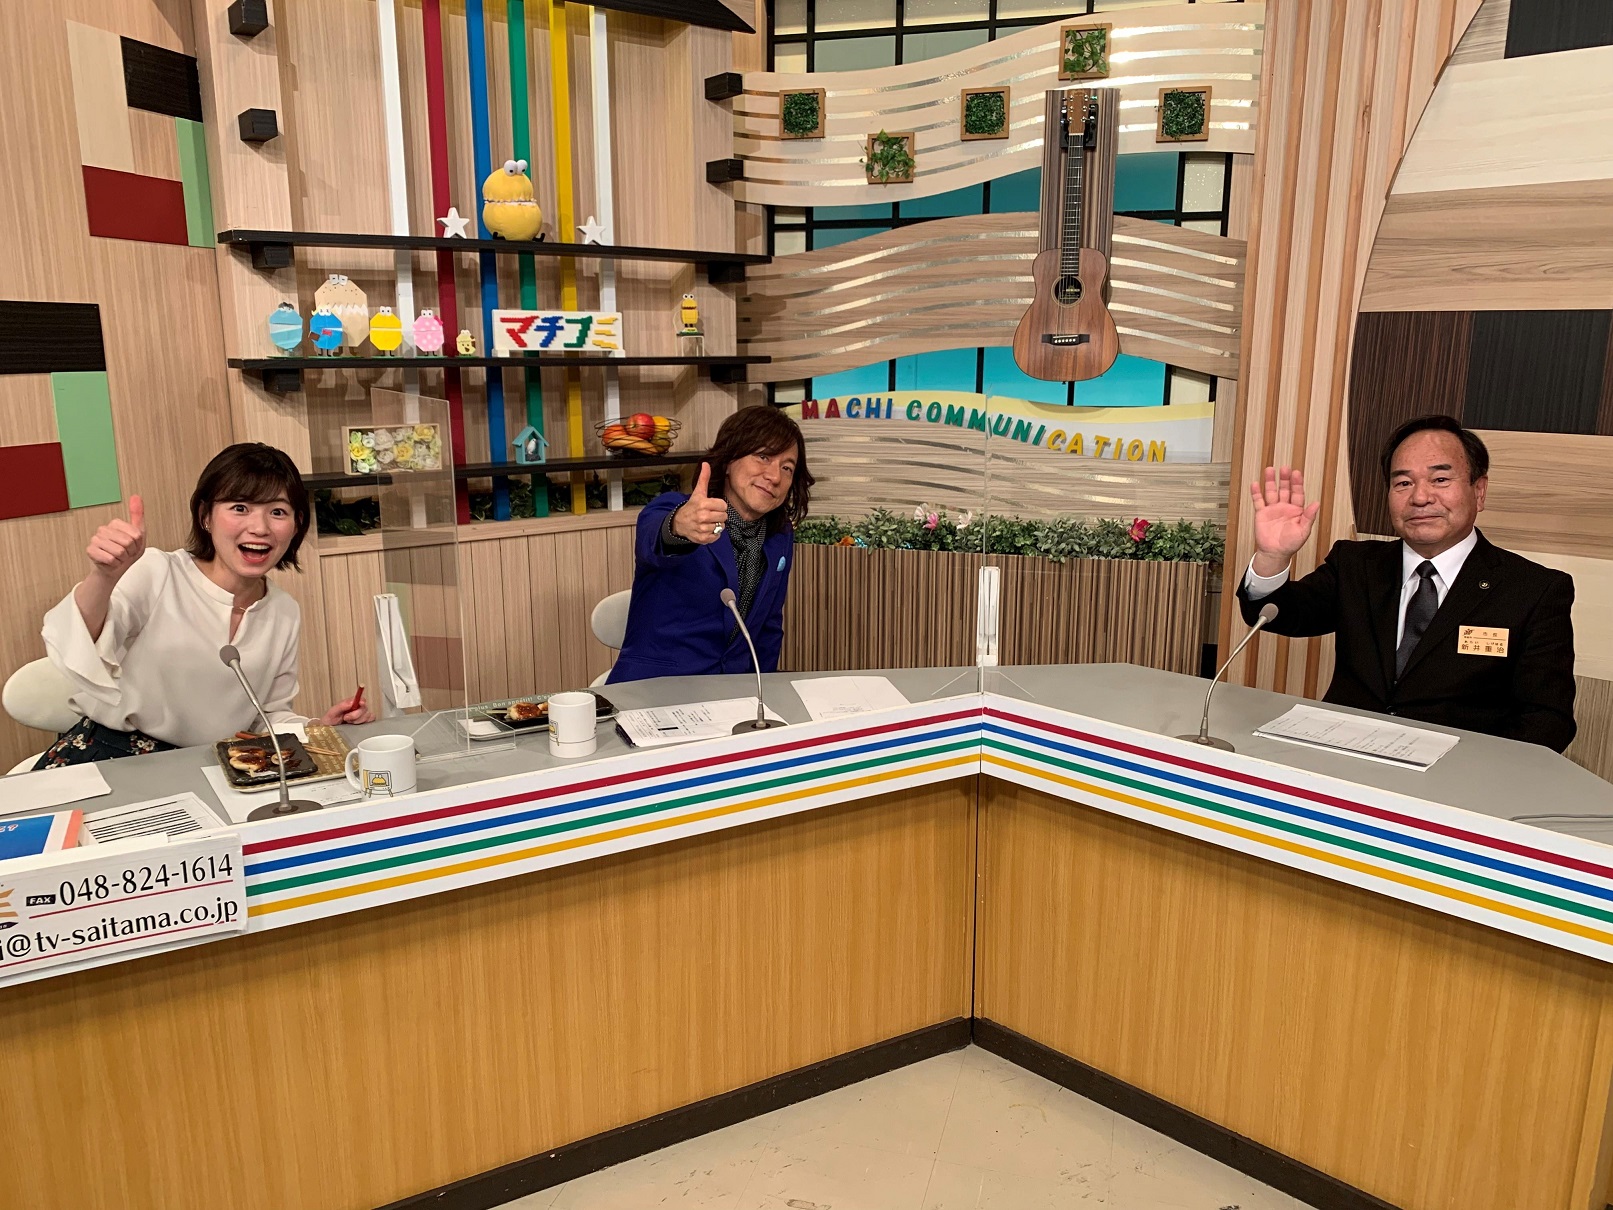 テレビ埼玉の夕方の情報番組「マチコミ」に出演している市長の写真